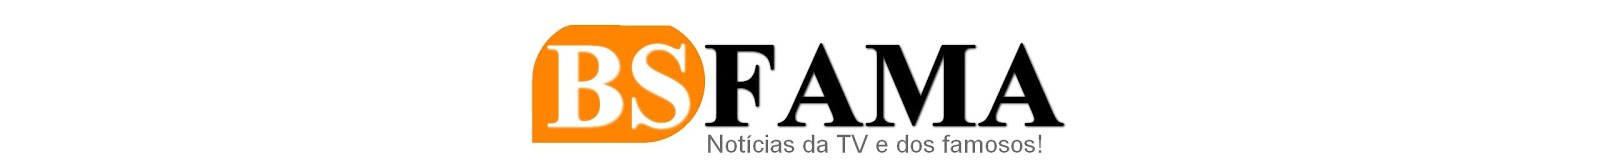 BS Fama - TV e Famosos